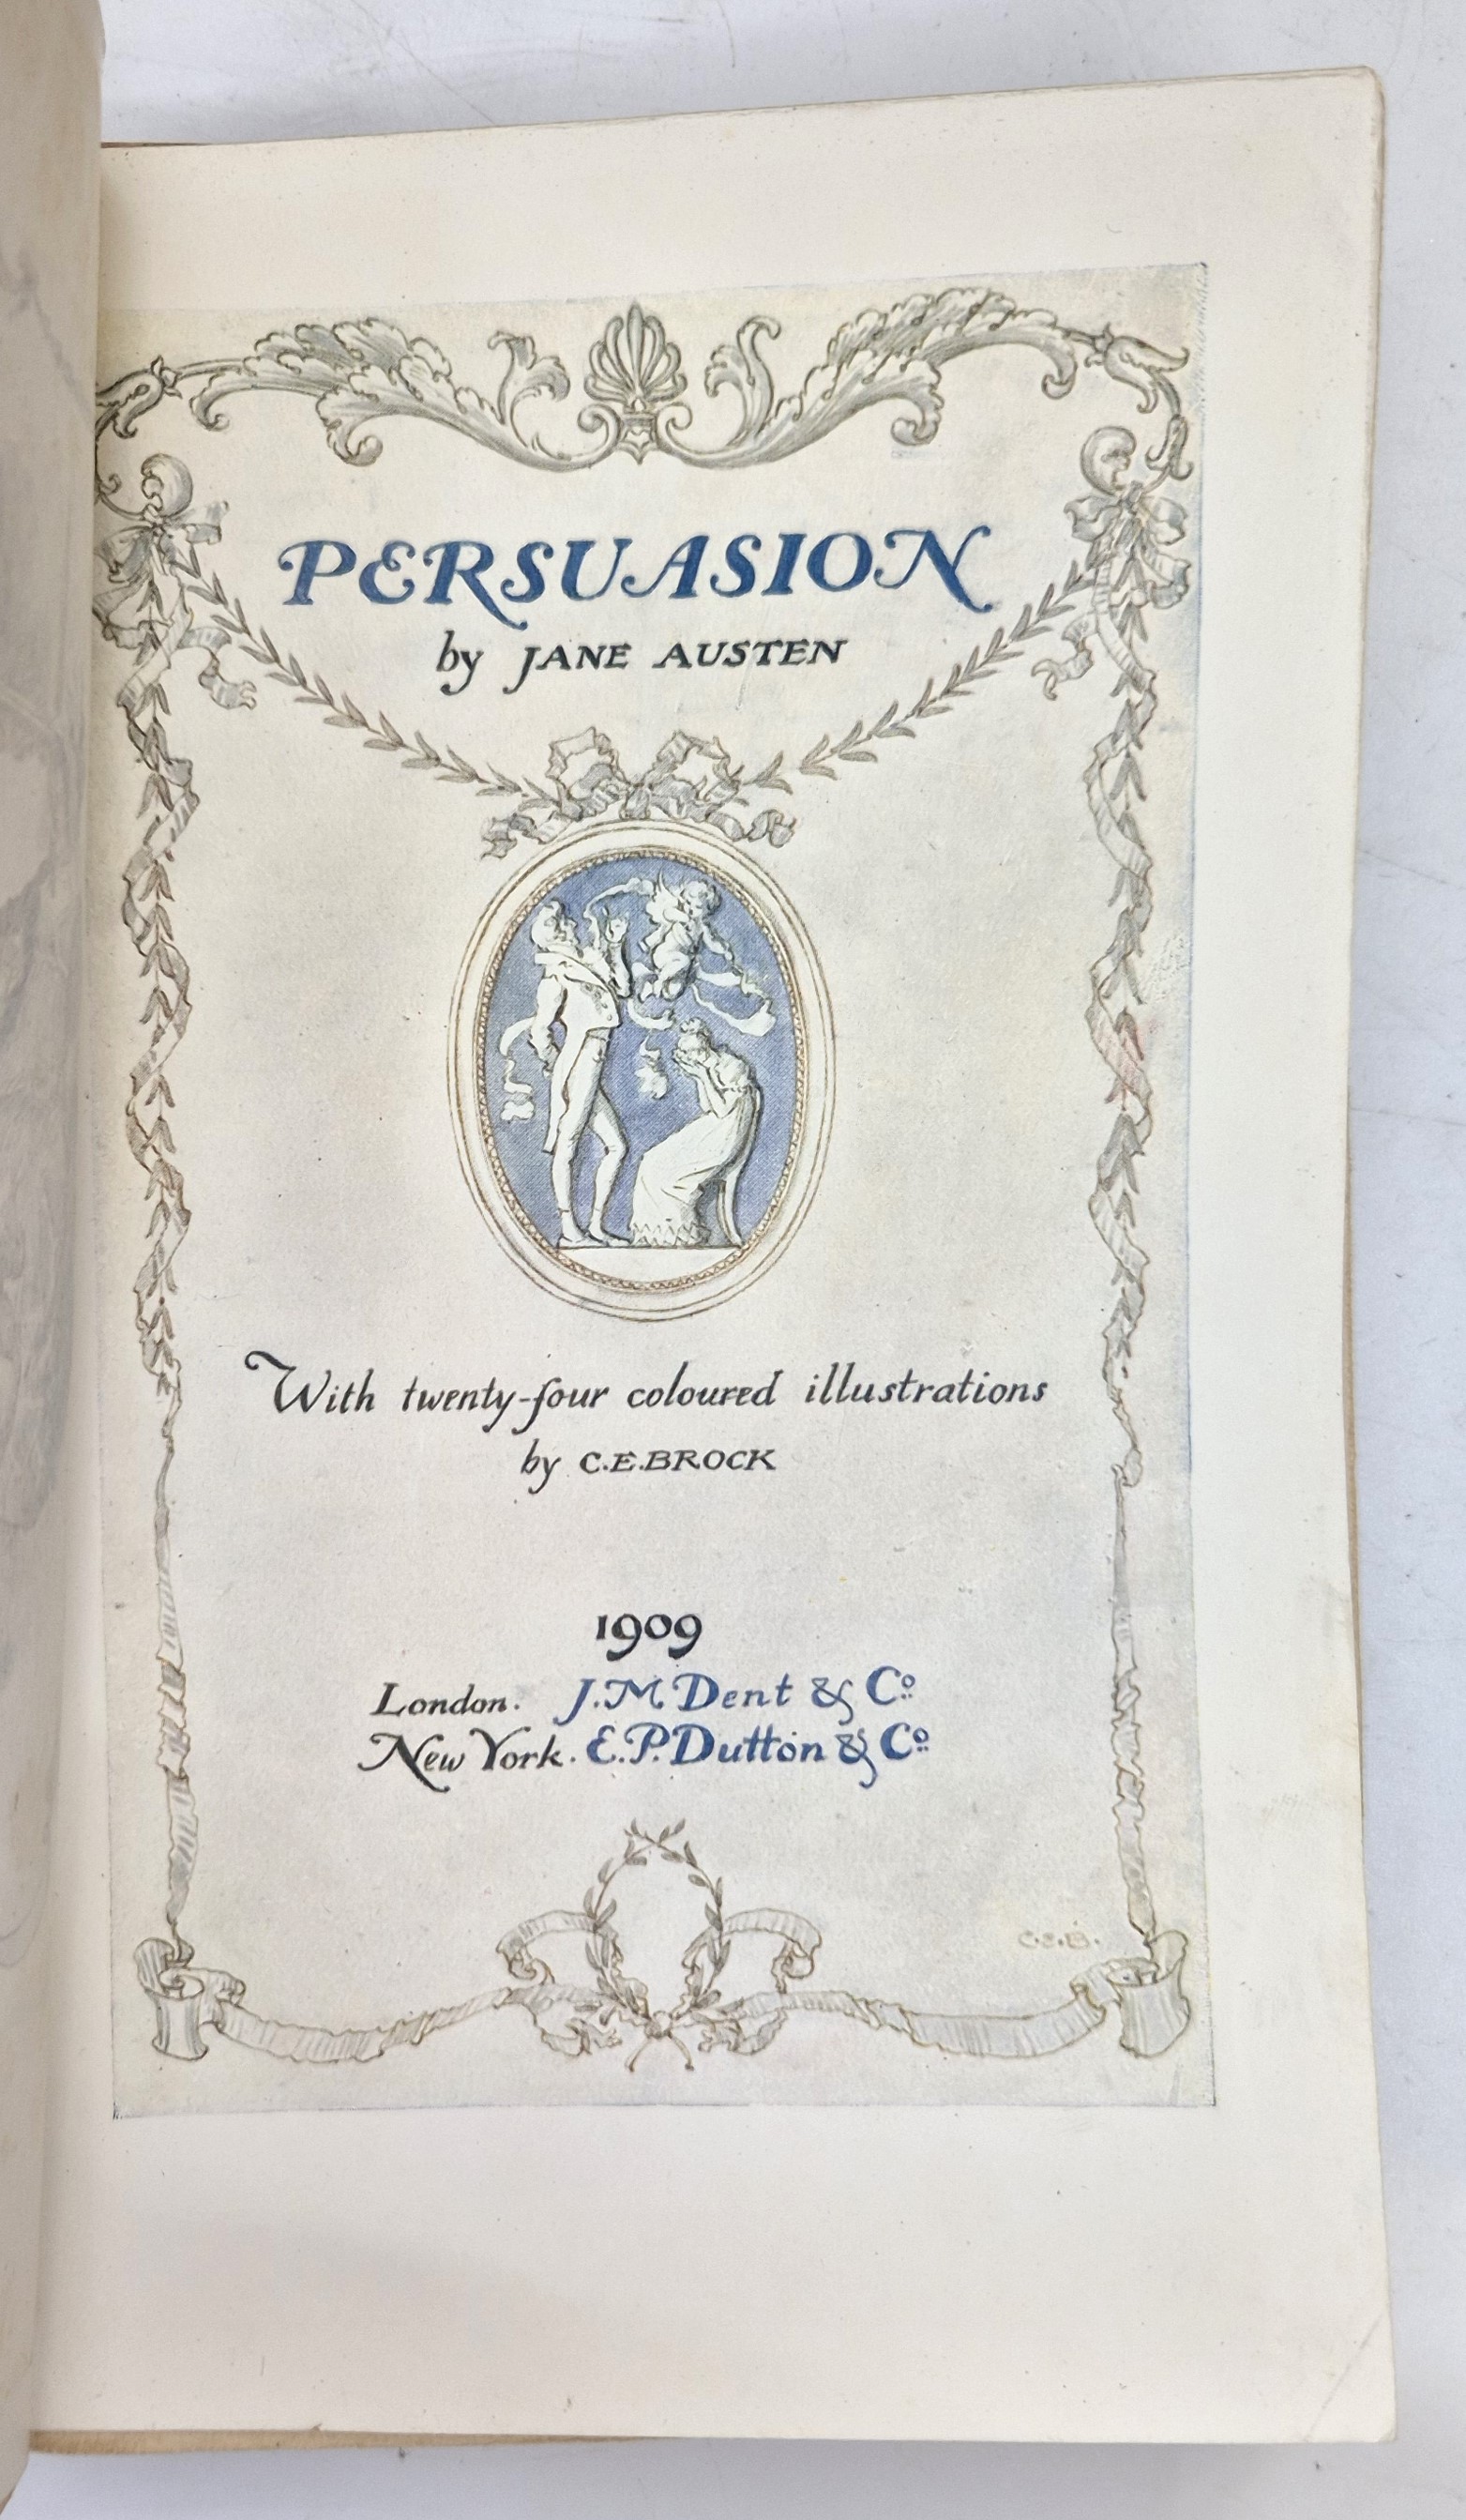 Austen (Jane), "Persuasion", London; J.M. Dent & Co, New York; E.P. Dutton & Co, 1909, 1st - Image 2 of 5